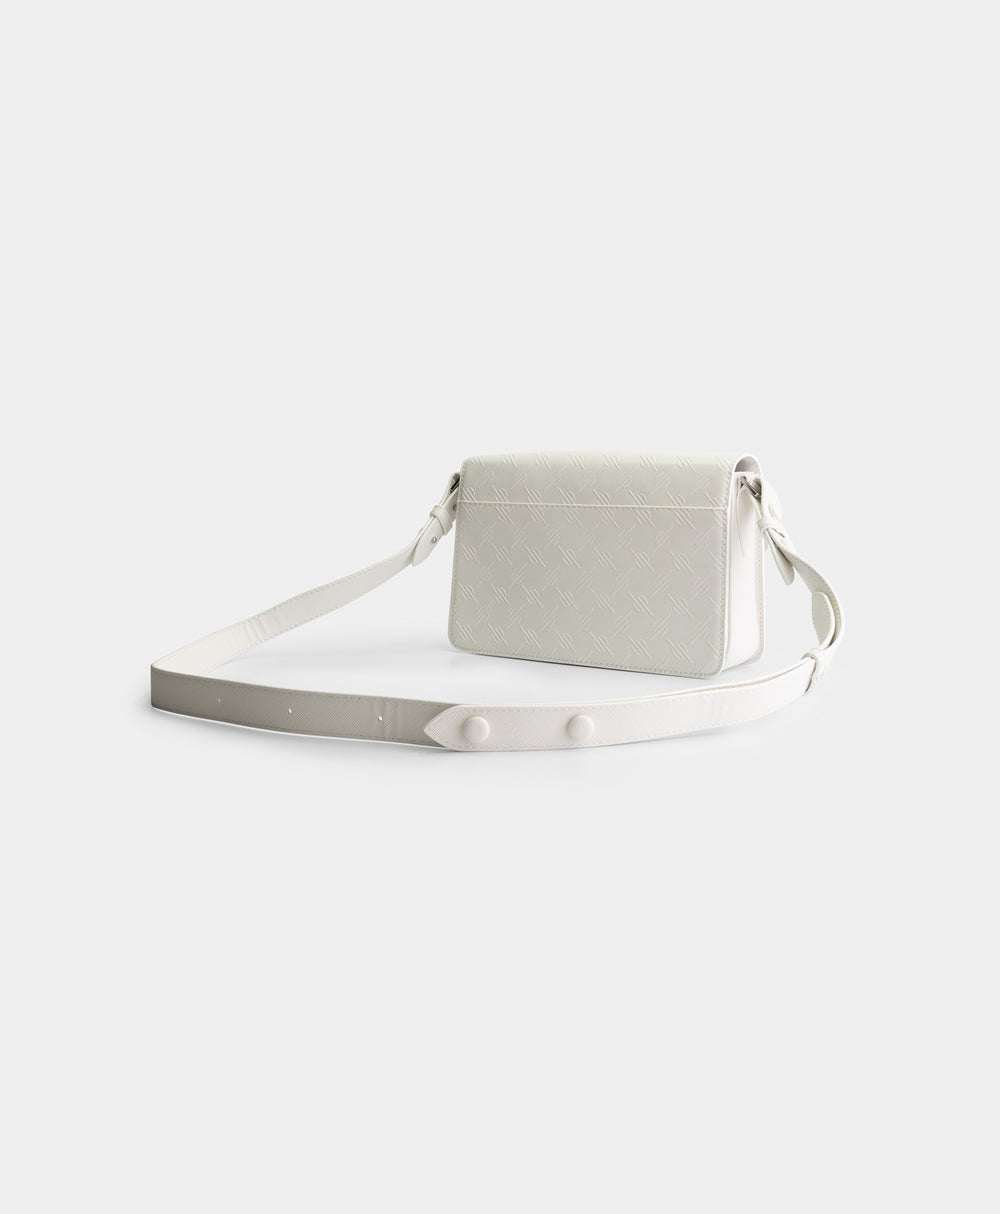 DP - White Meru Monogram Bag - Packshot - Rear